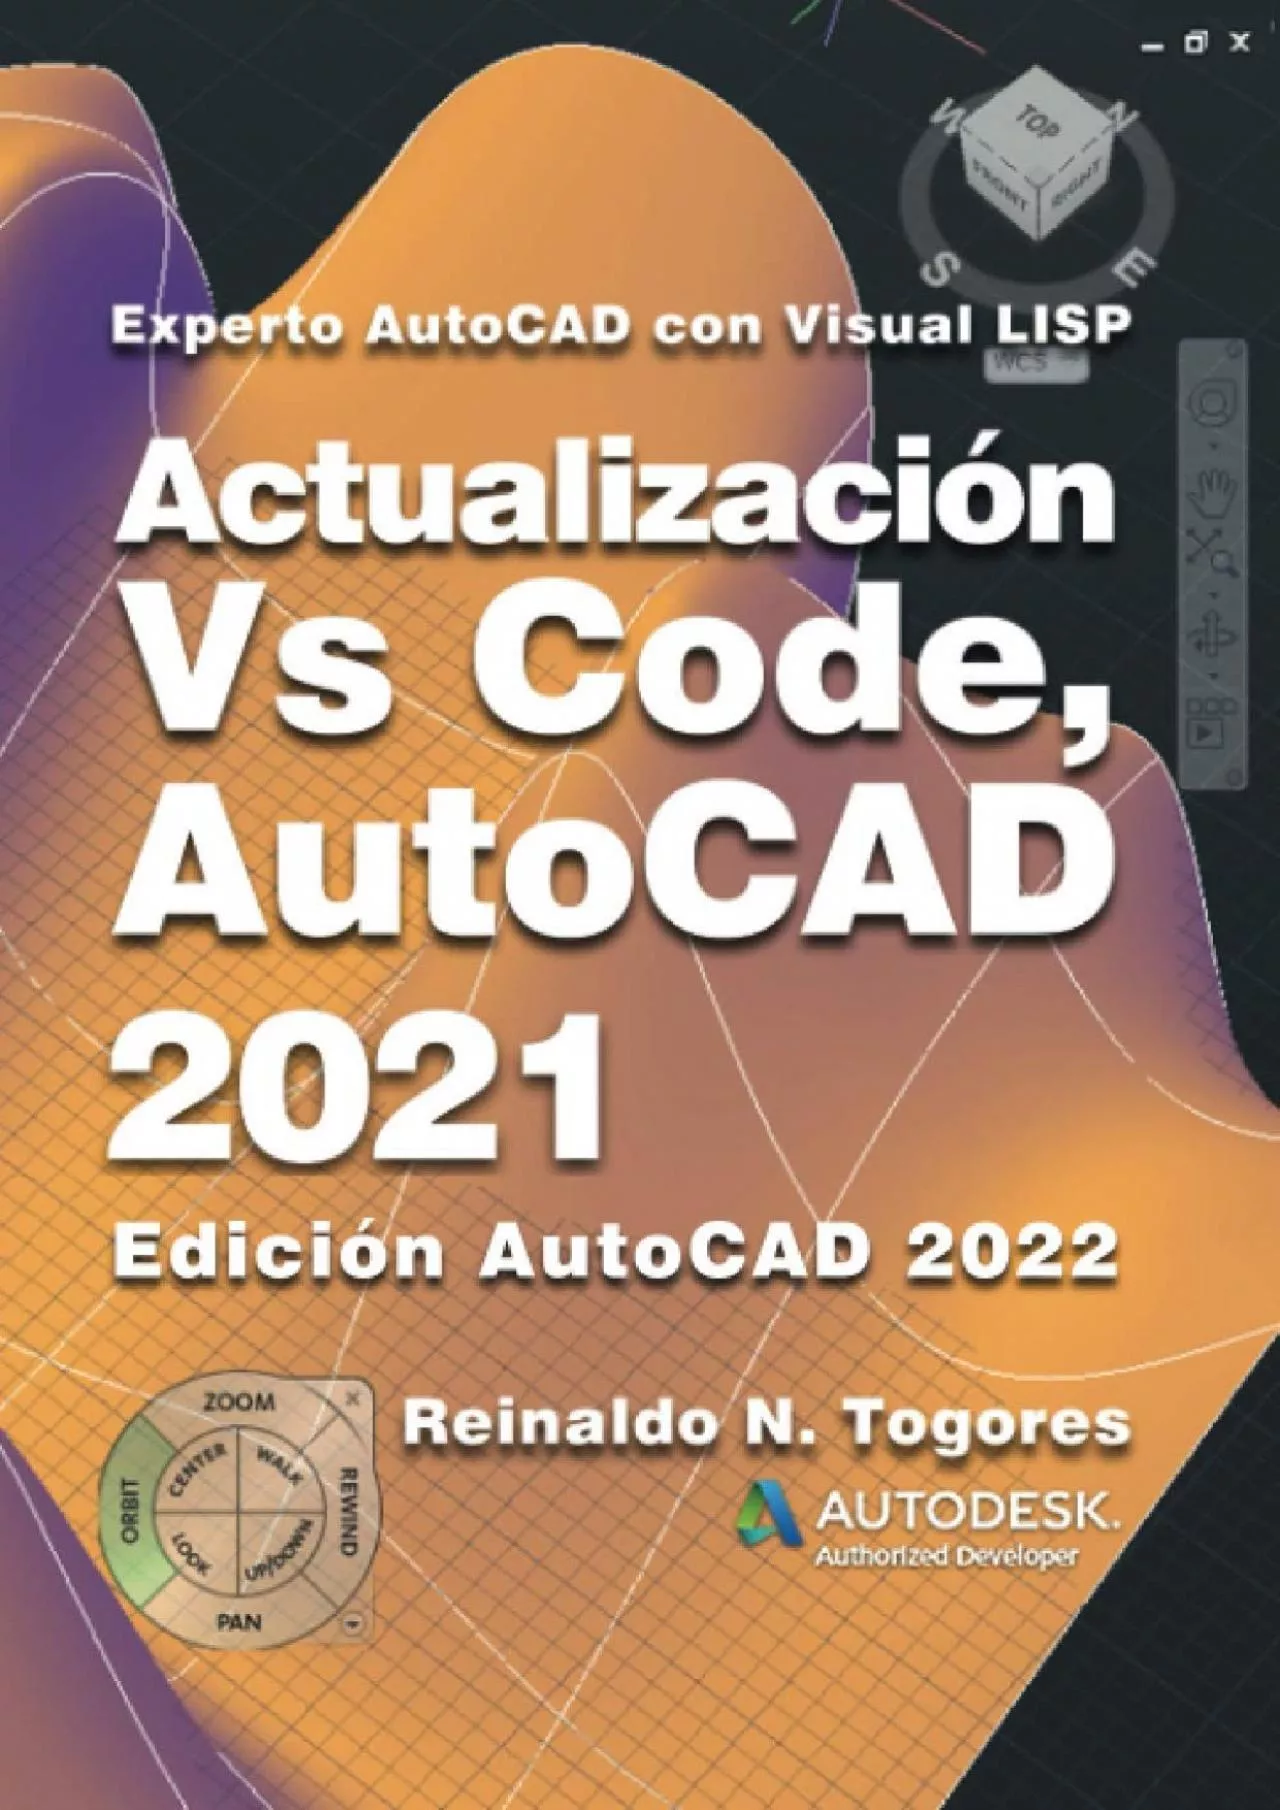 [DOWLOAD]-Actualización VS Code, AutoCAD 2021 para Experto AutoCAD con Visual LISP (Spanish